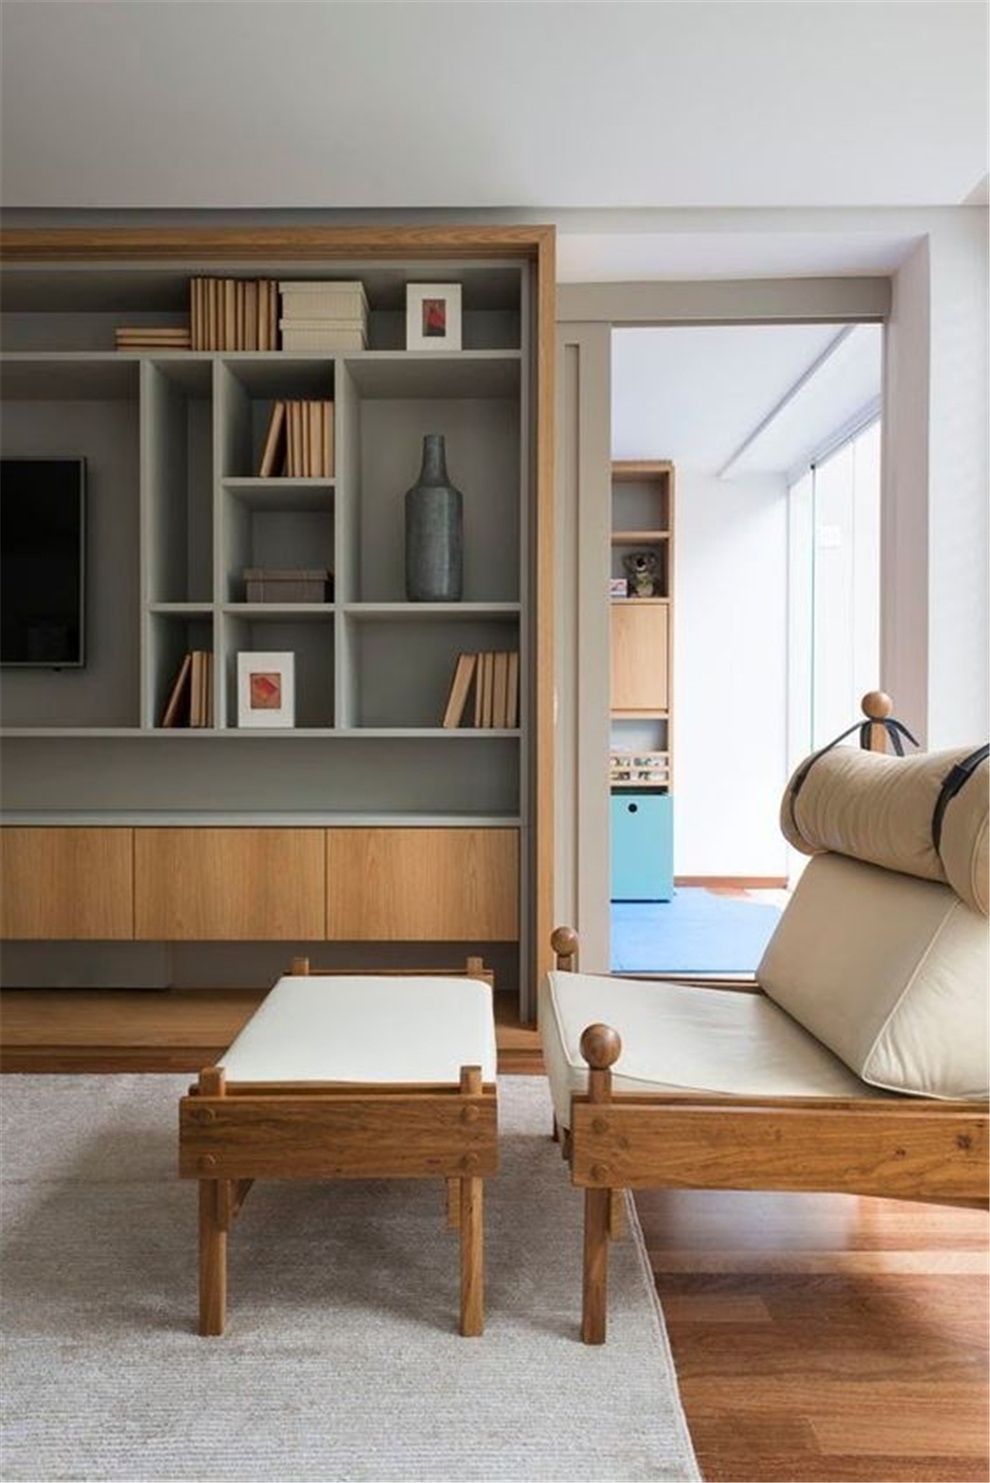 三居室装修方案:设计好收纳空间,节省80%整理时间!